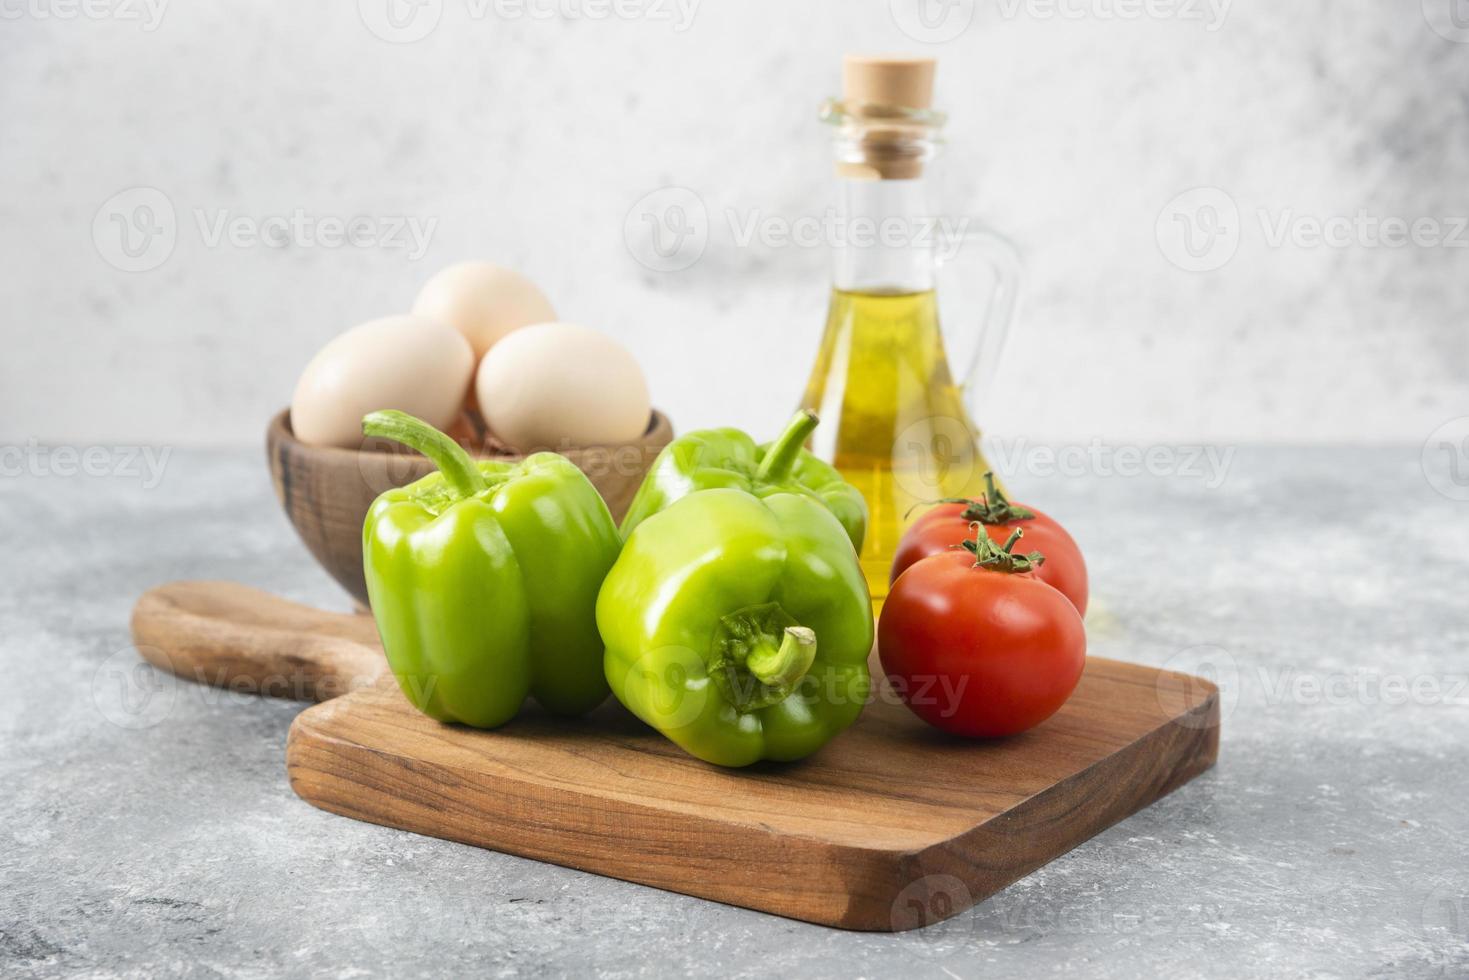 œufs de poule crus avec une bouteille en verre d'huile et de légumes frais photo